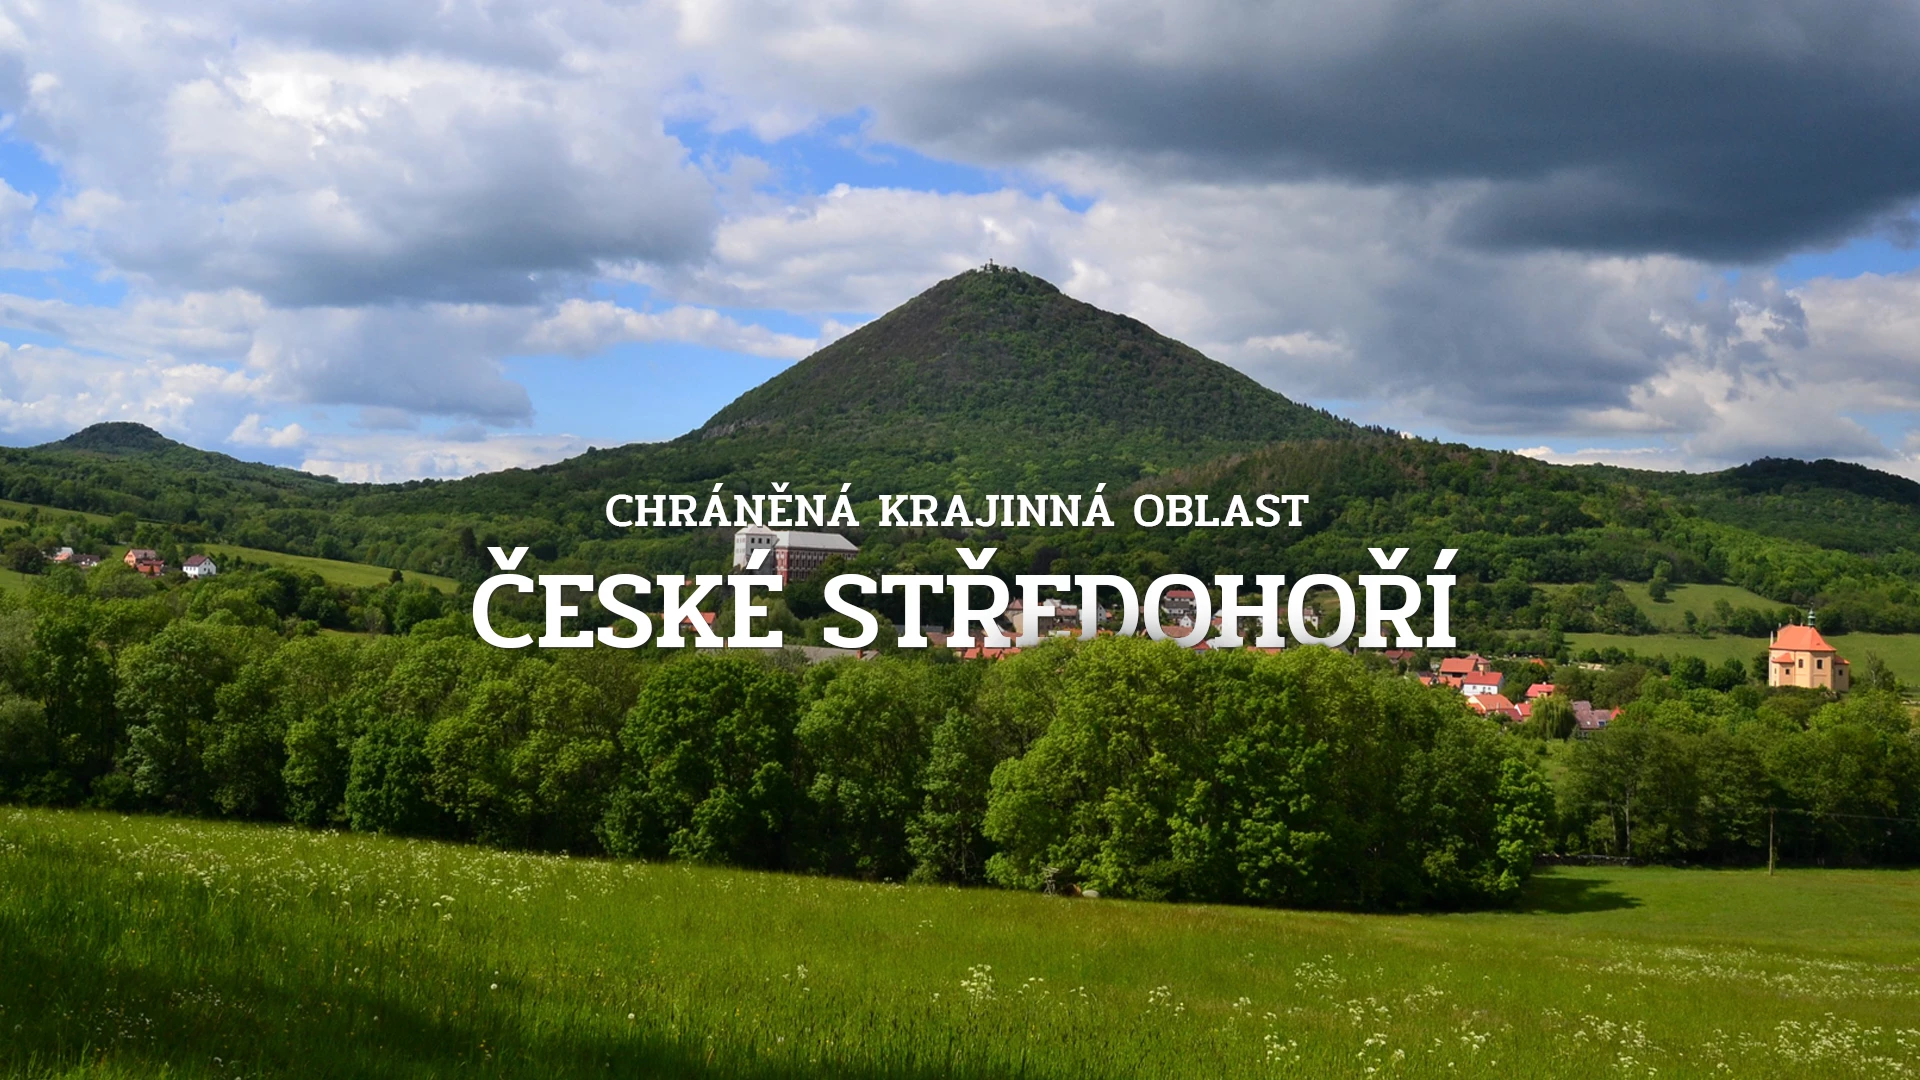 Chráněná krajinná oblast České středohoří